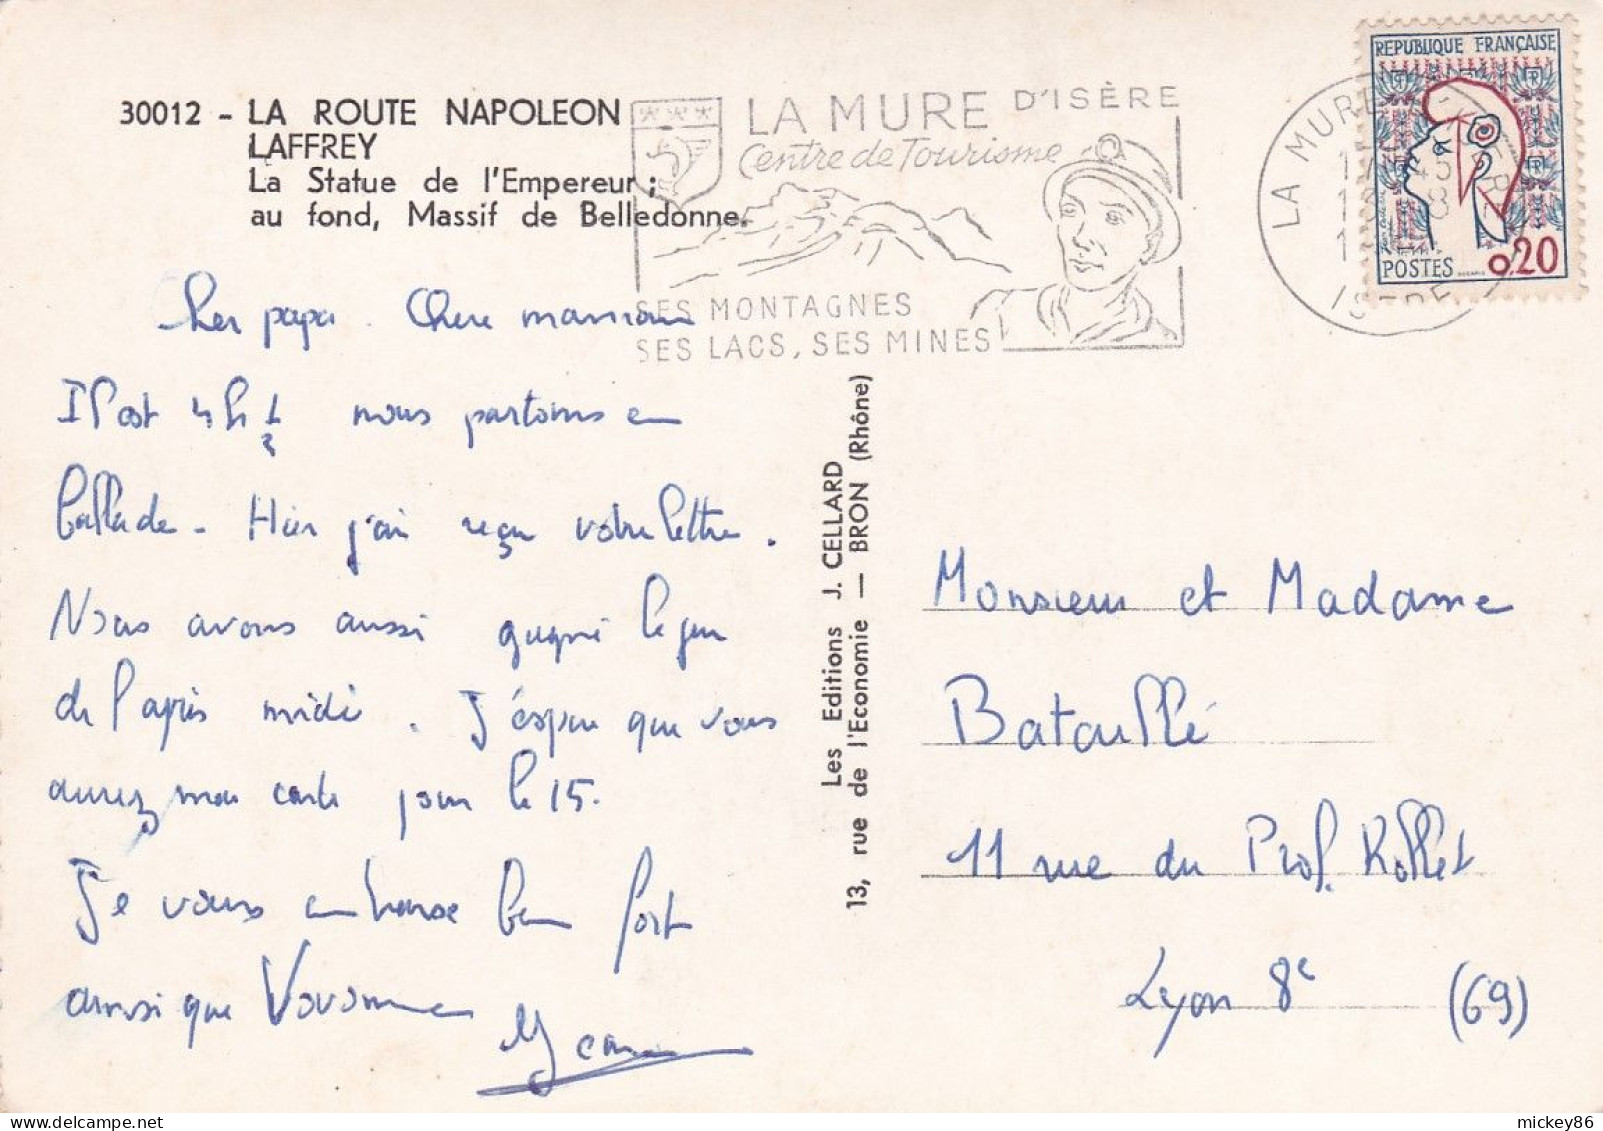 LAFFREY--1961--La Route Napoléon--La Statue De L'Empereur, Au Fond, Massif De Belledonne.....timbre....cachet LA MURE-38 - Laffrey